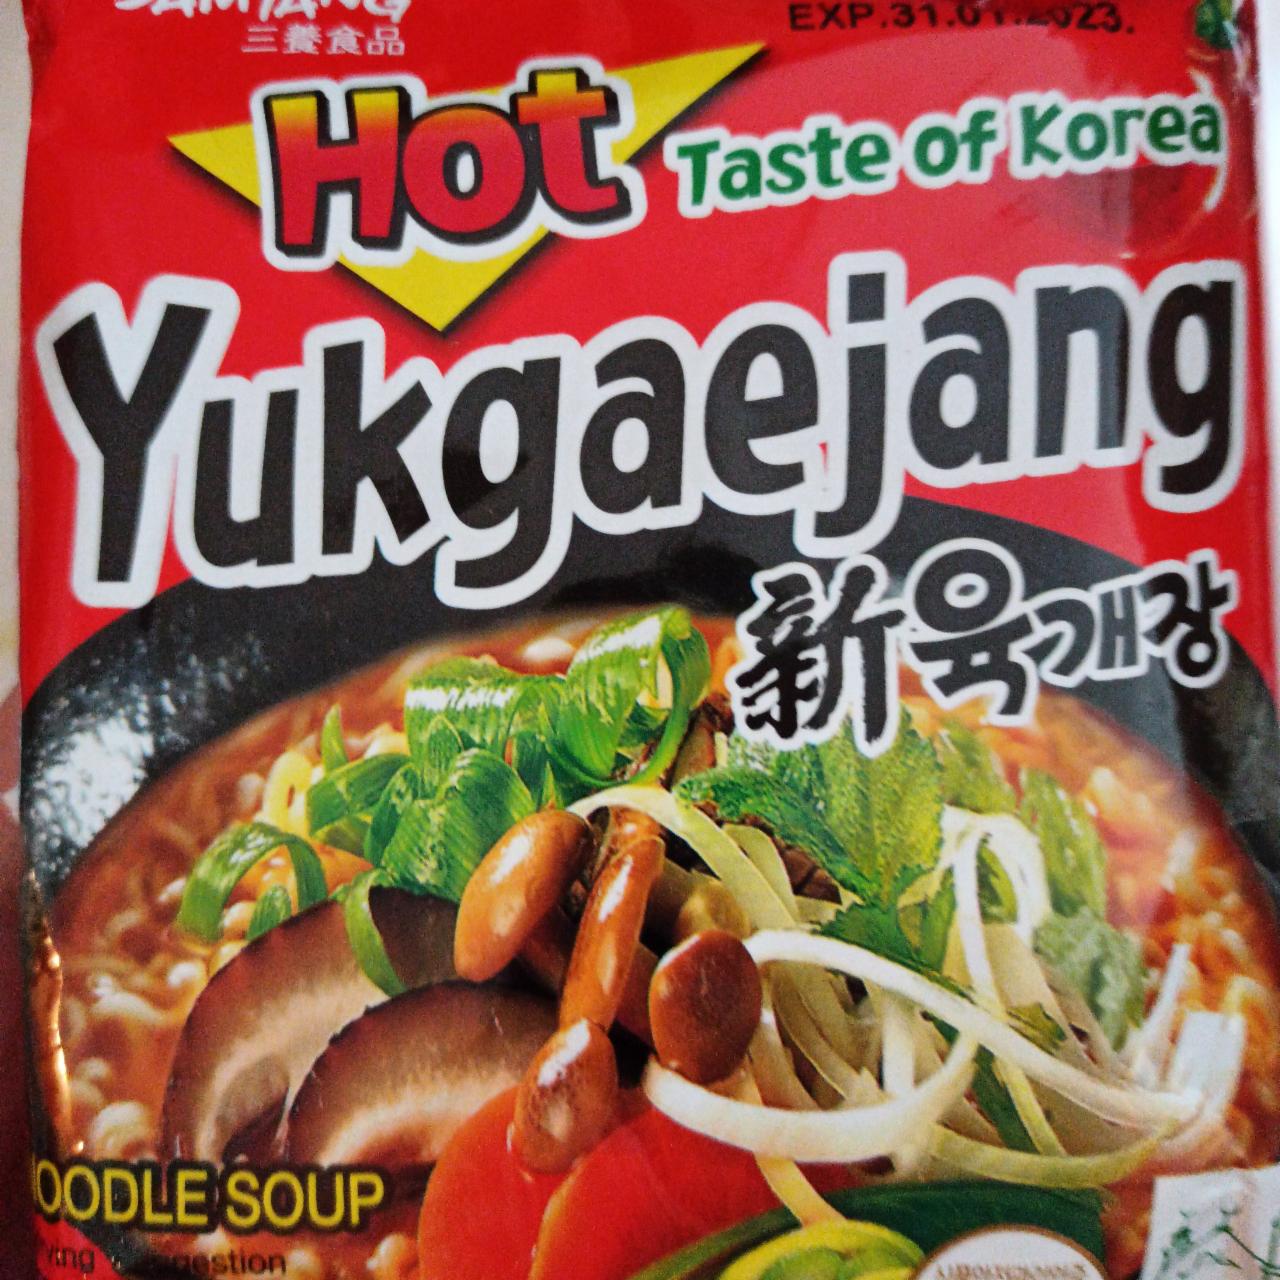 Fotografie - hot taste of Korea Yukgaejang Samyang